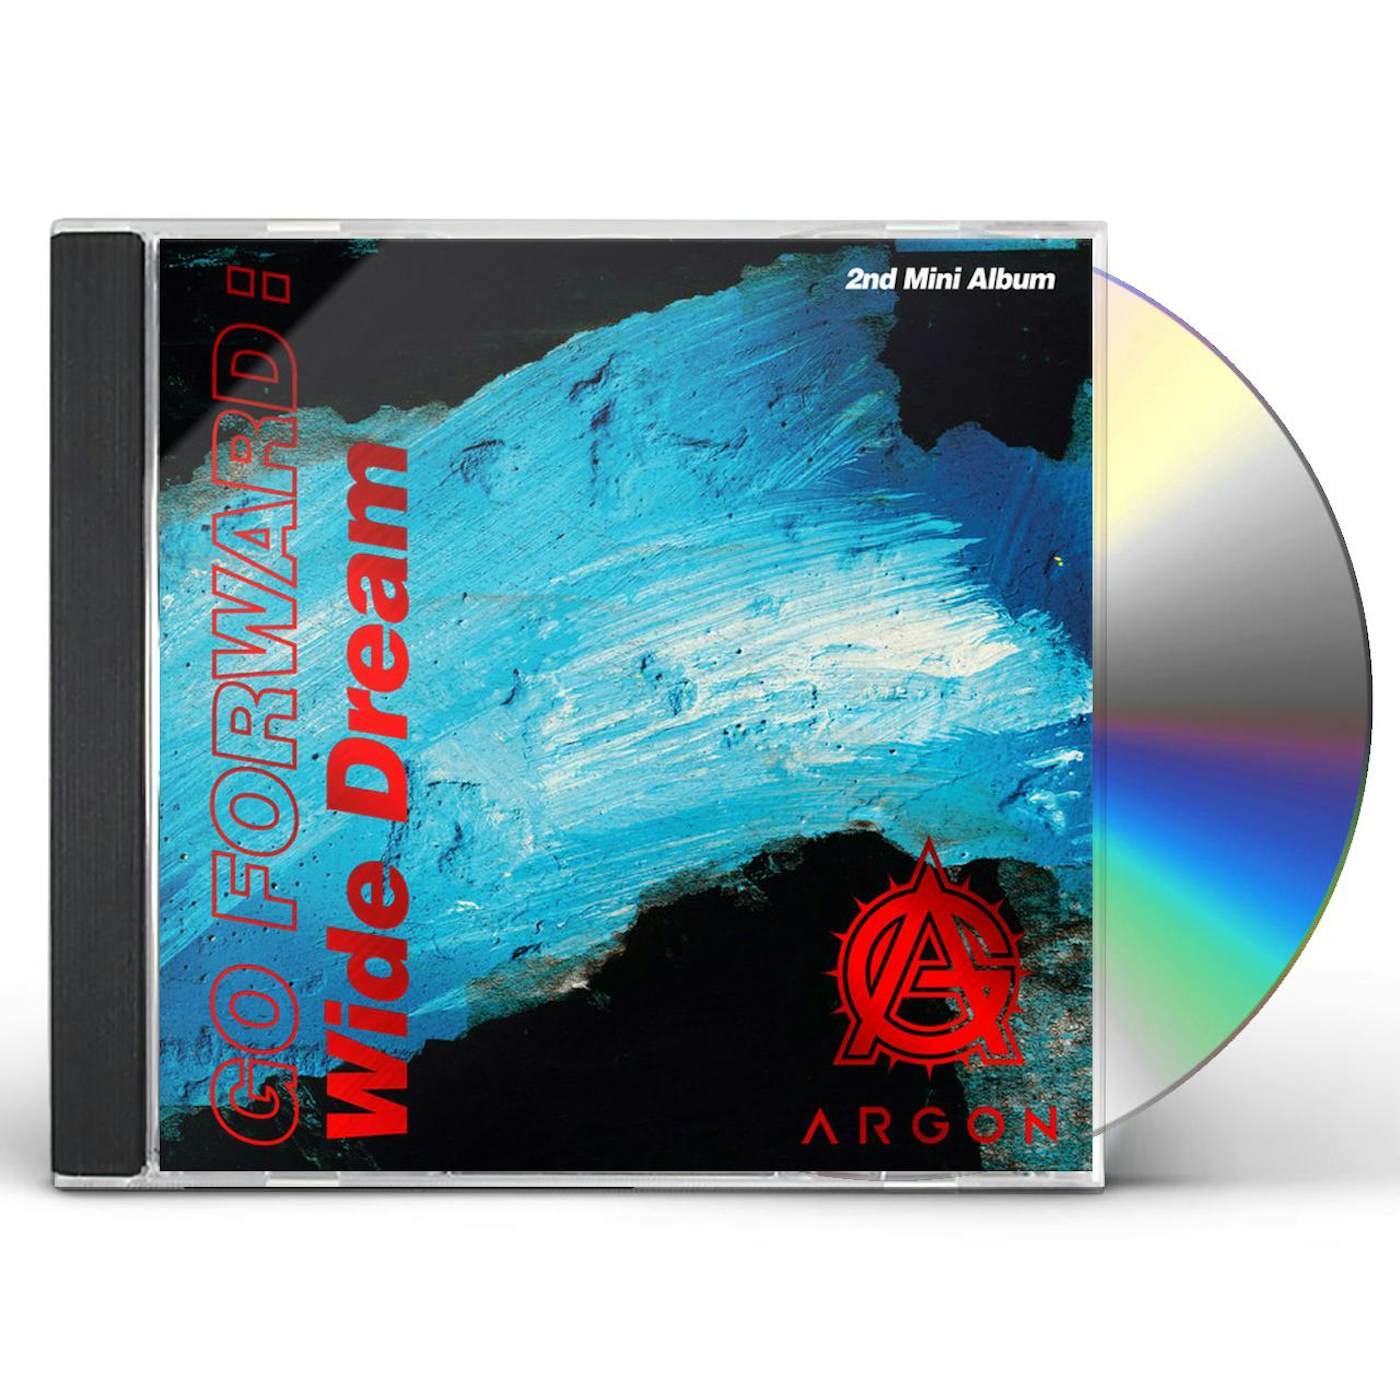 ARGON GO FORWARD: WIDE DREAM CD